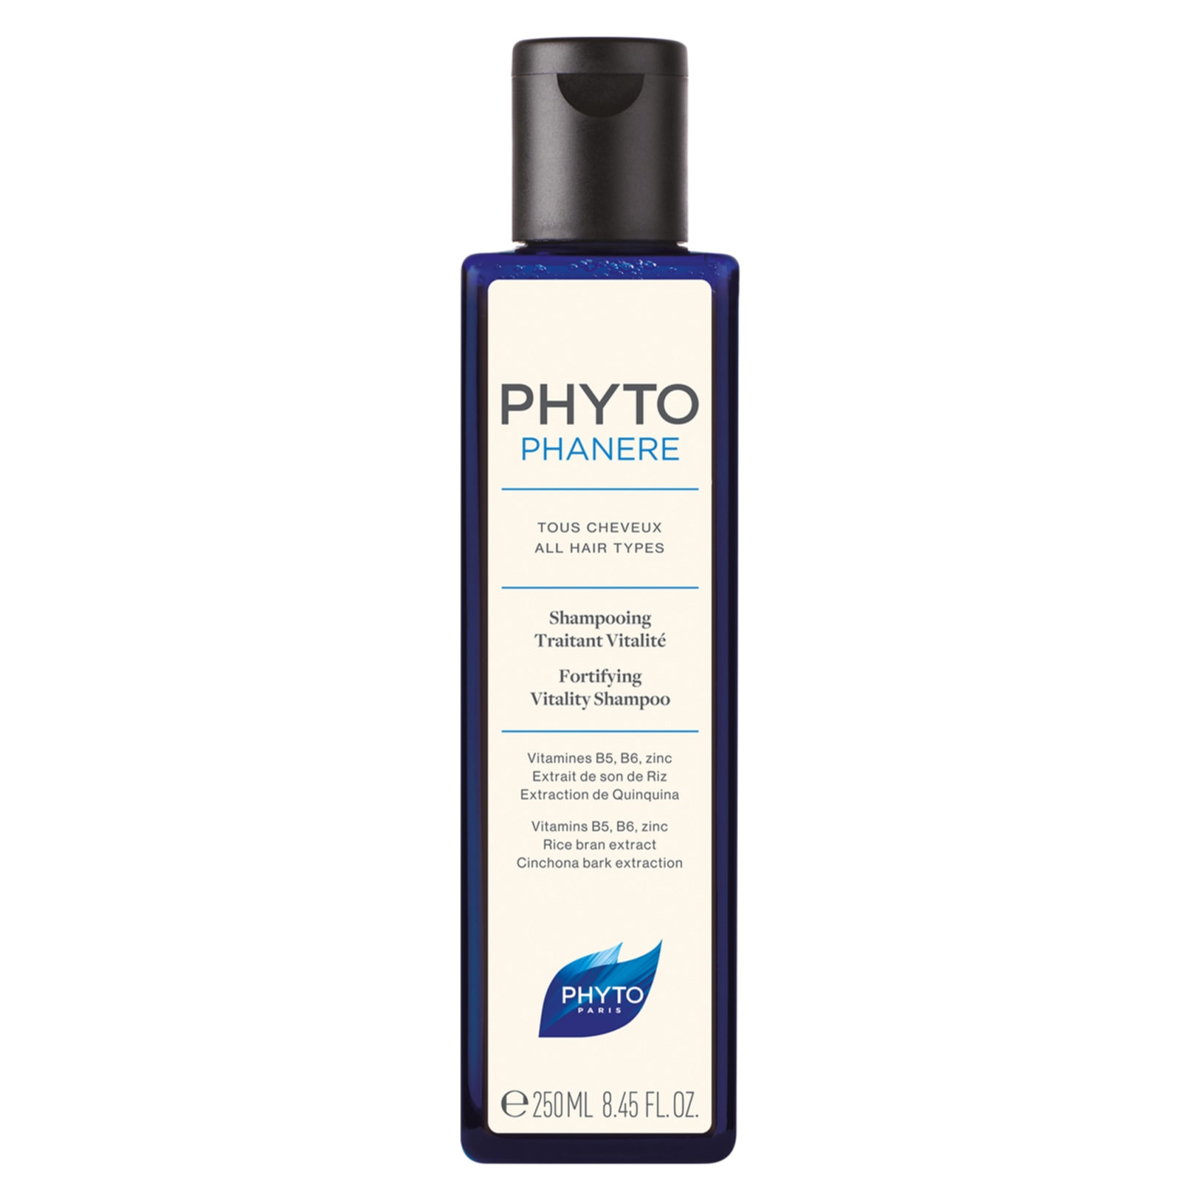 شامپو فانر ضد ریزش~Phanere Fortifying Vitality Shampoo~PHYTO